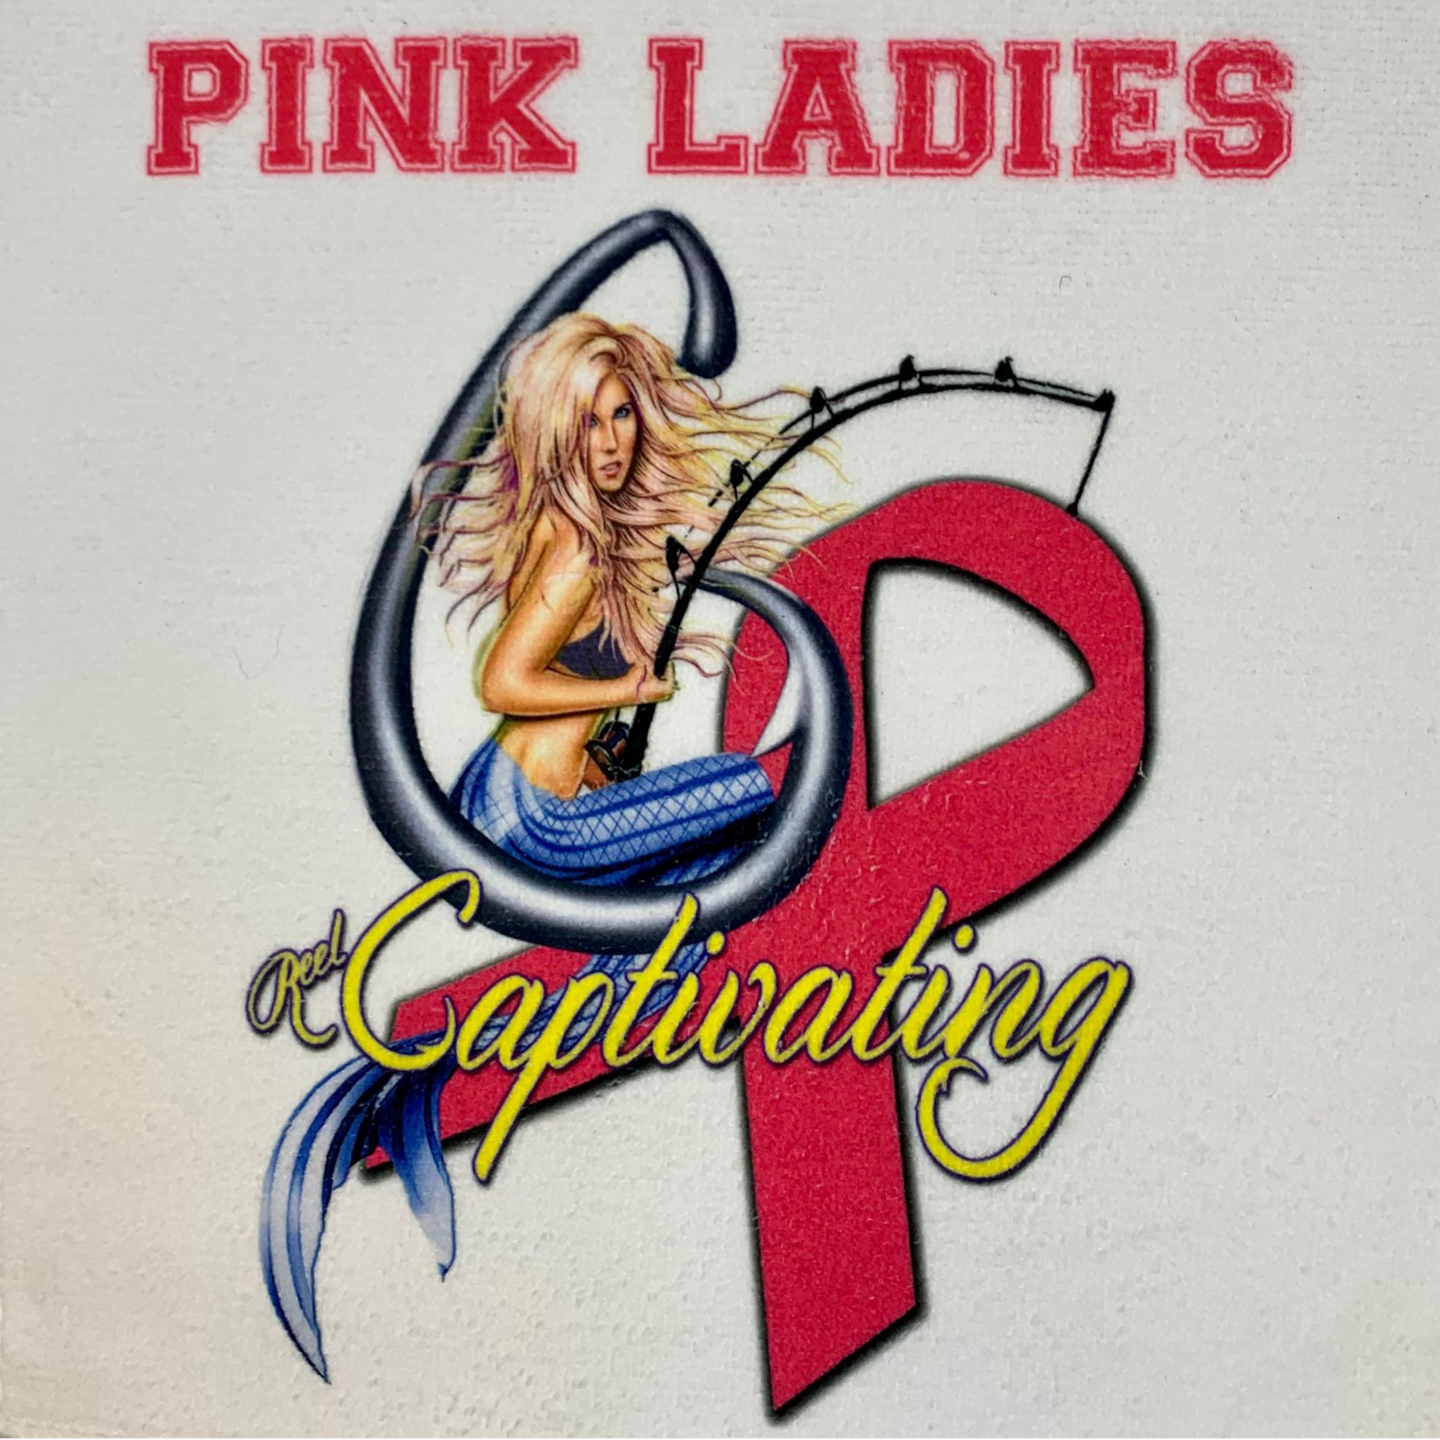 Pink Ladies - Microfiber Towel